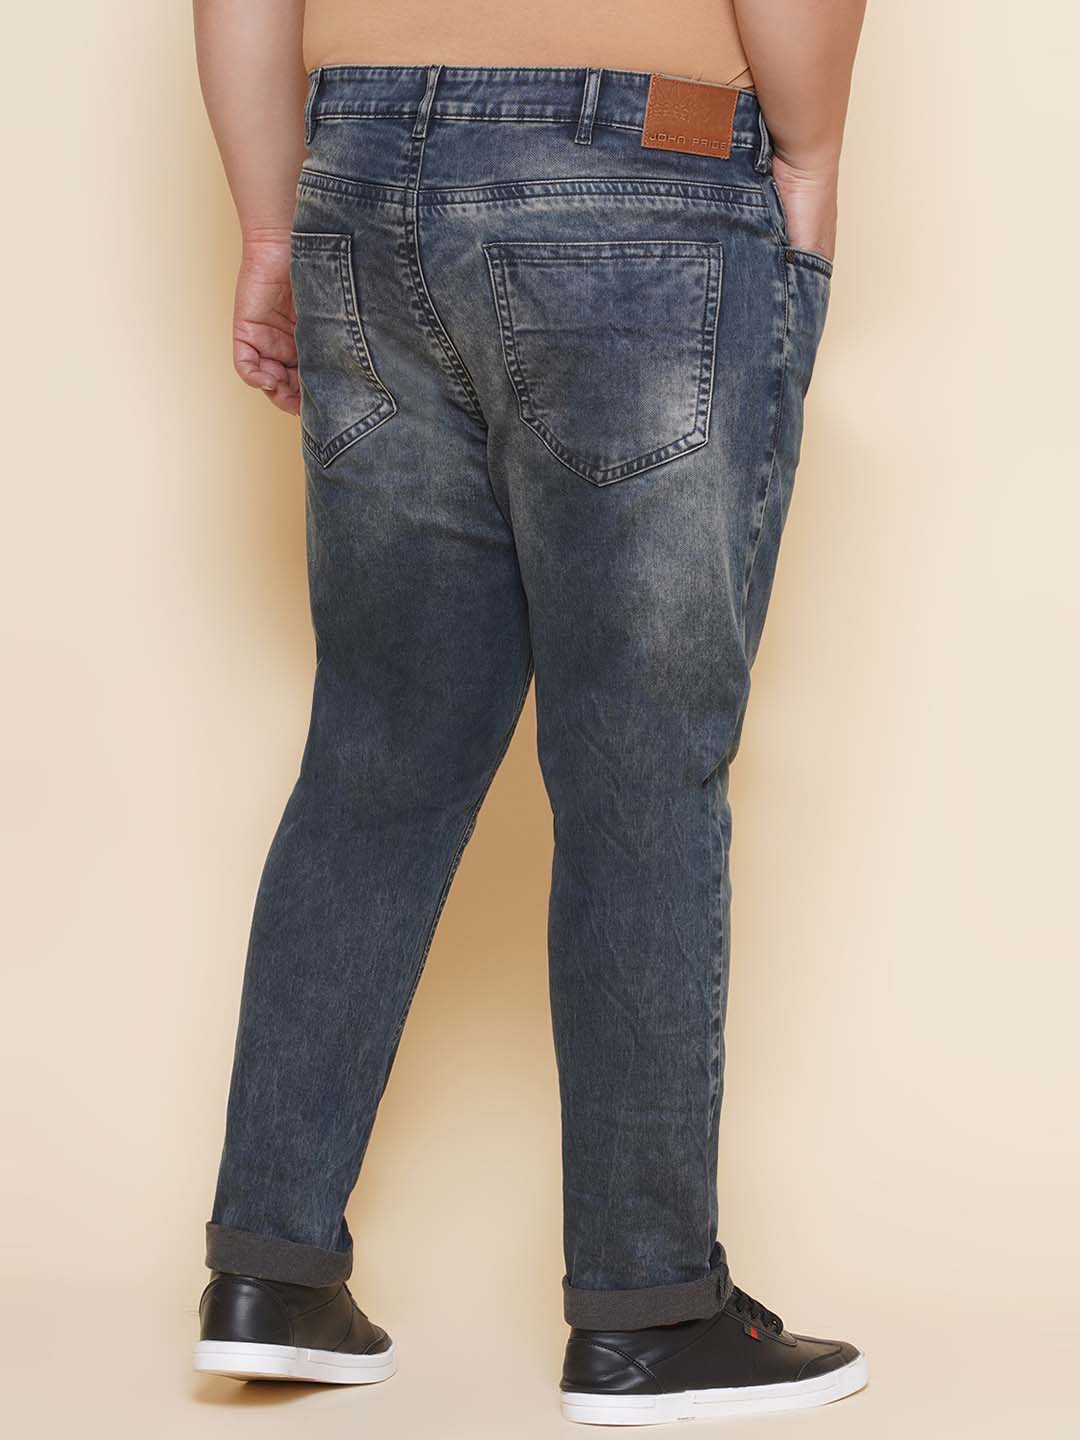 bottomwear/jeans/JPJ12424/jpj12424-5.jpg